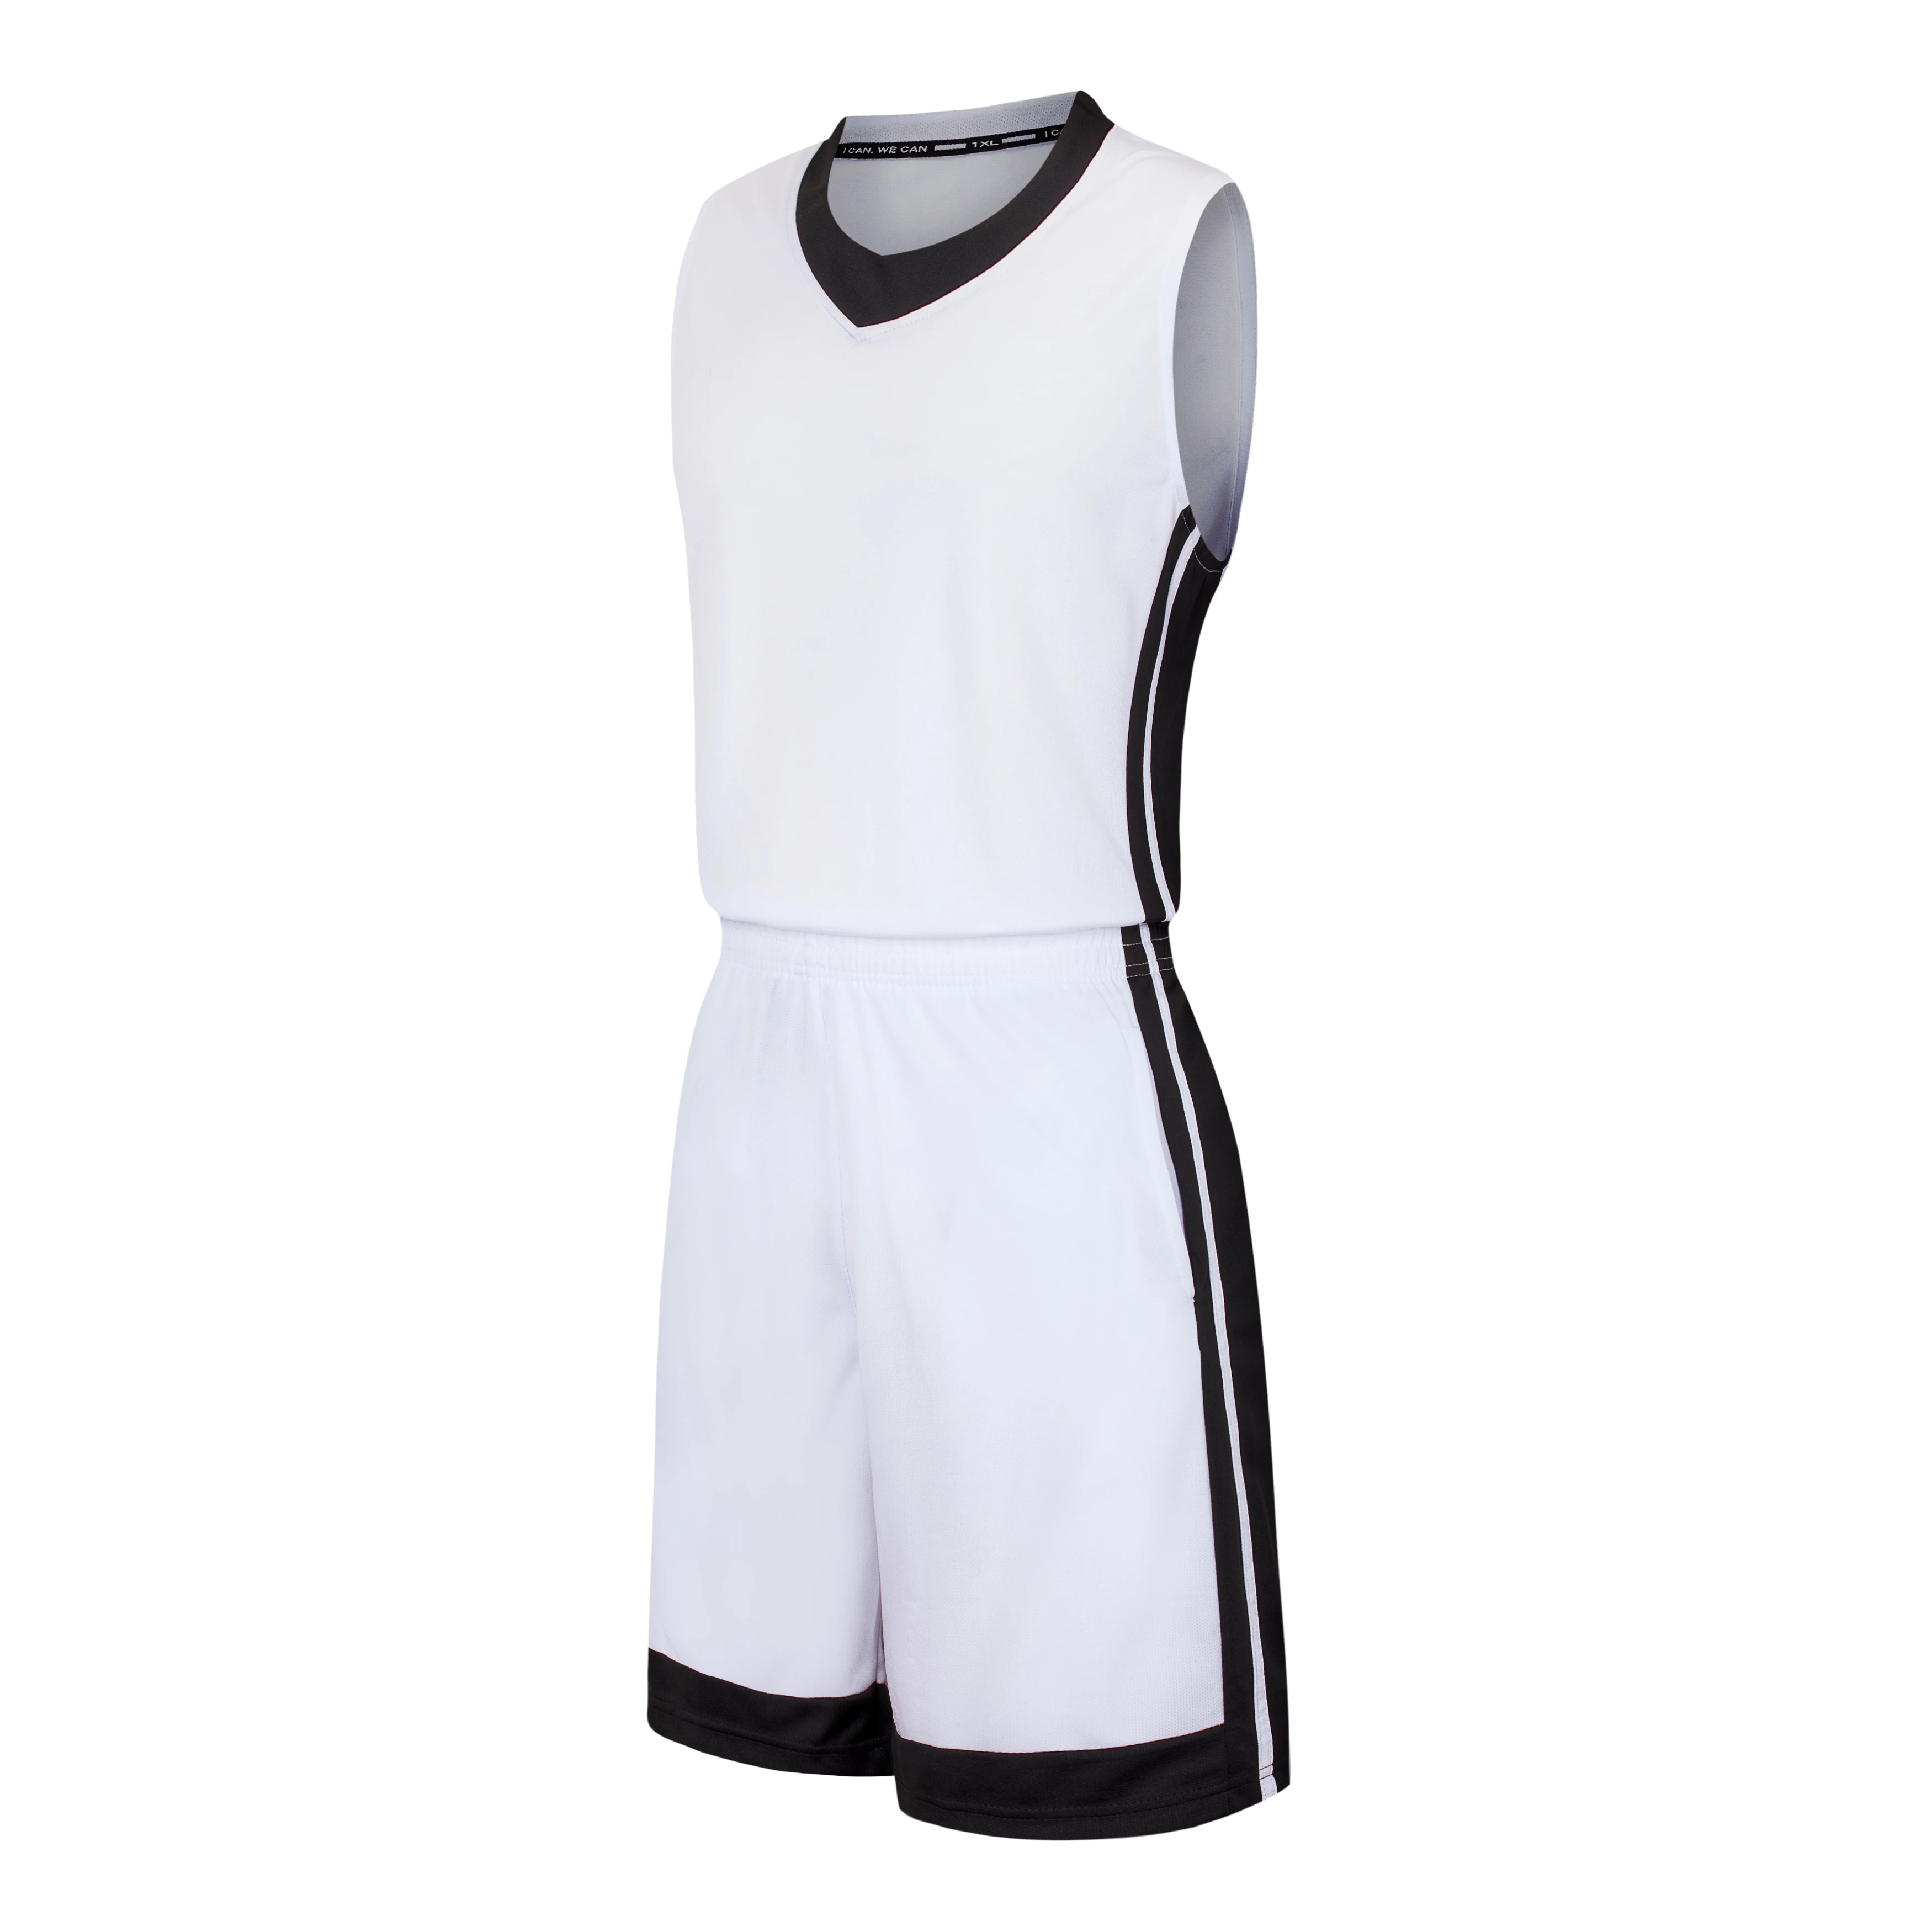 Баскетбольные майки для взрослых, спортивные наборы, дышащие ткани, мужская и женская футболка без рукавов, тренировочная одежда, фитнес-зал, 9 цветов - Цвет: Белый